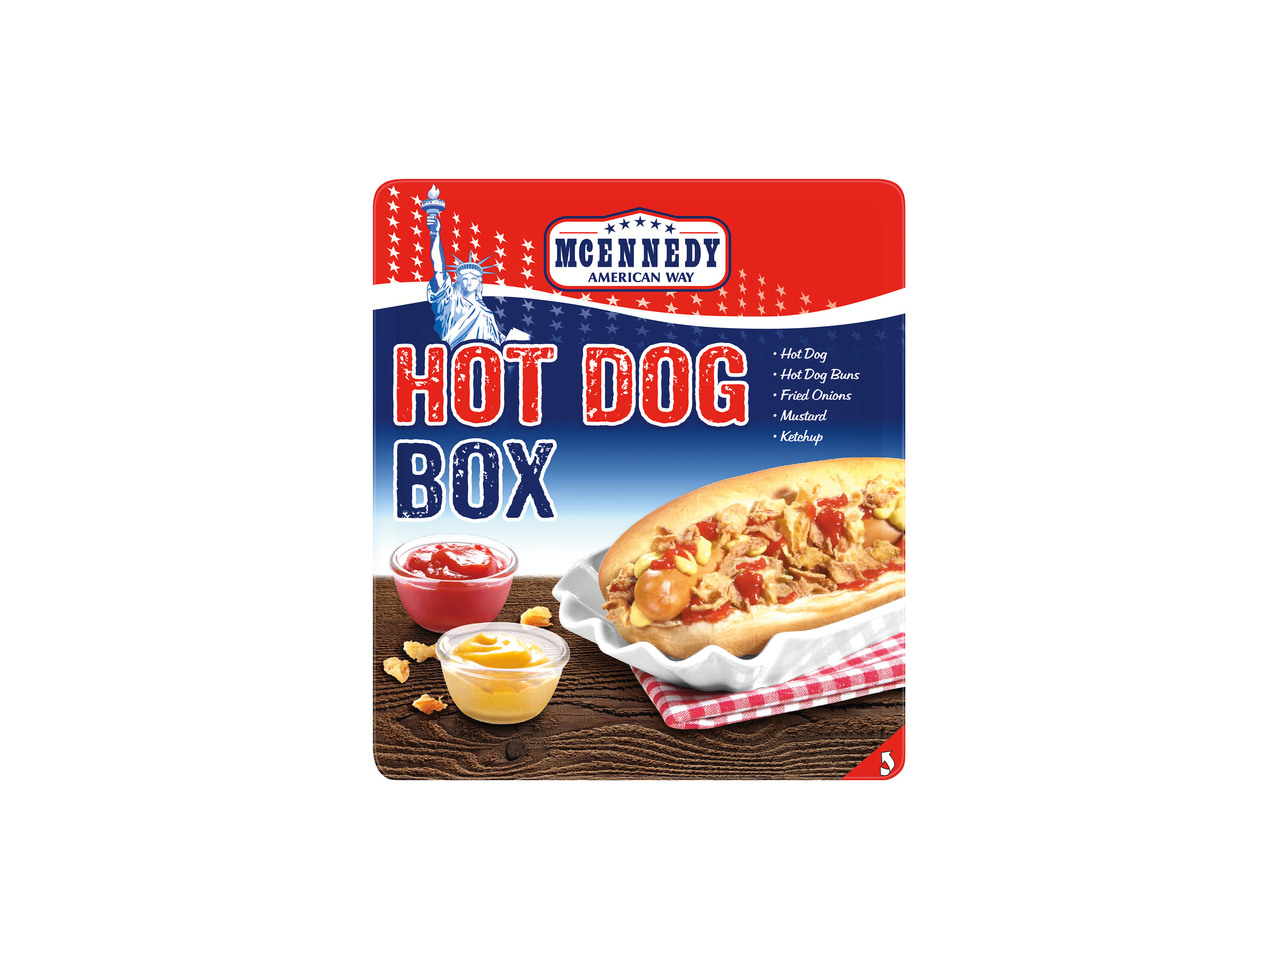 HOT DOG BOX